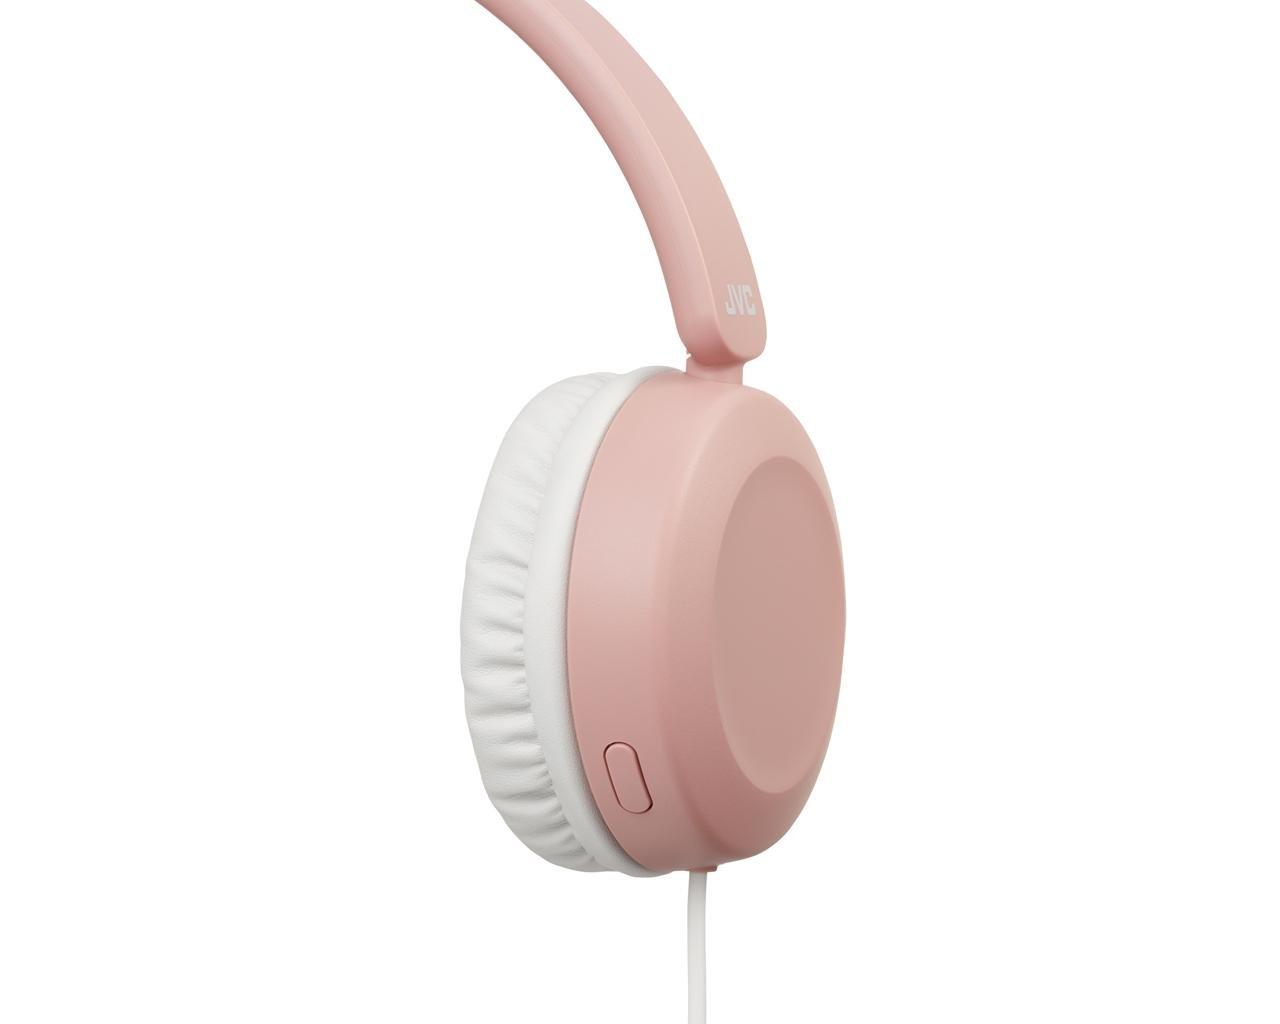 JVC  JVC HA-S31M-P Kopfhörer Kabelgebunden Kopfband AnrufeMusik Pink 